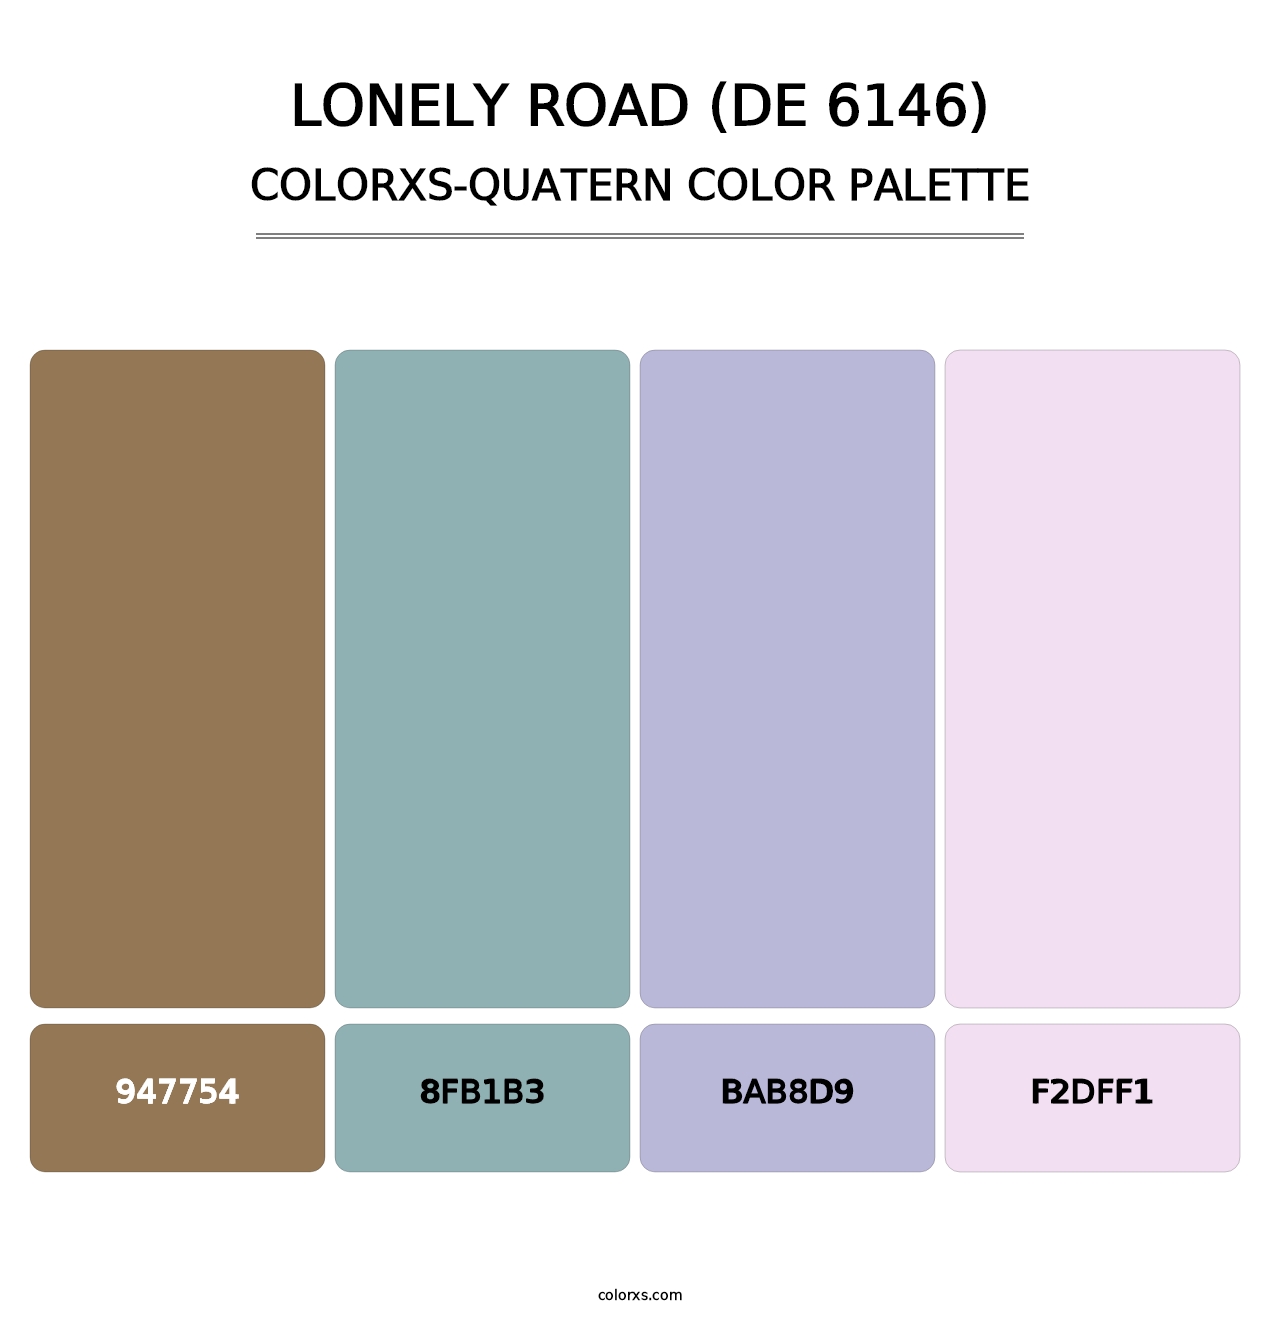 Lonely Road (DE 6146) - Colorxs Quatern Palette